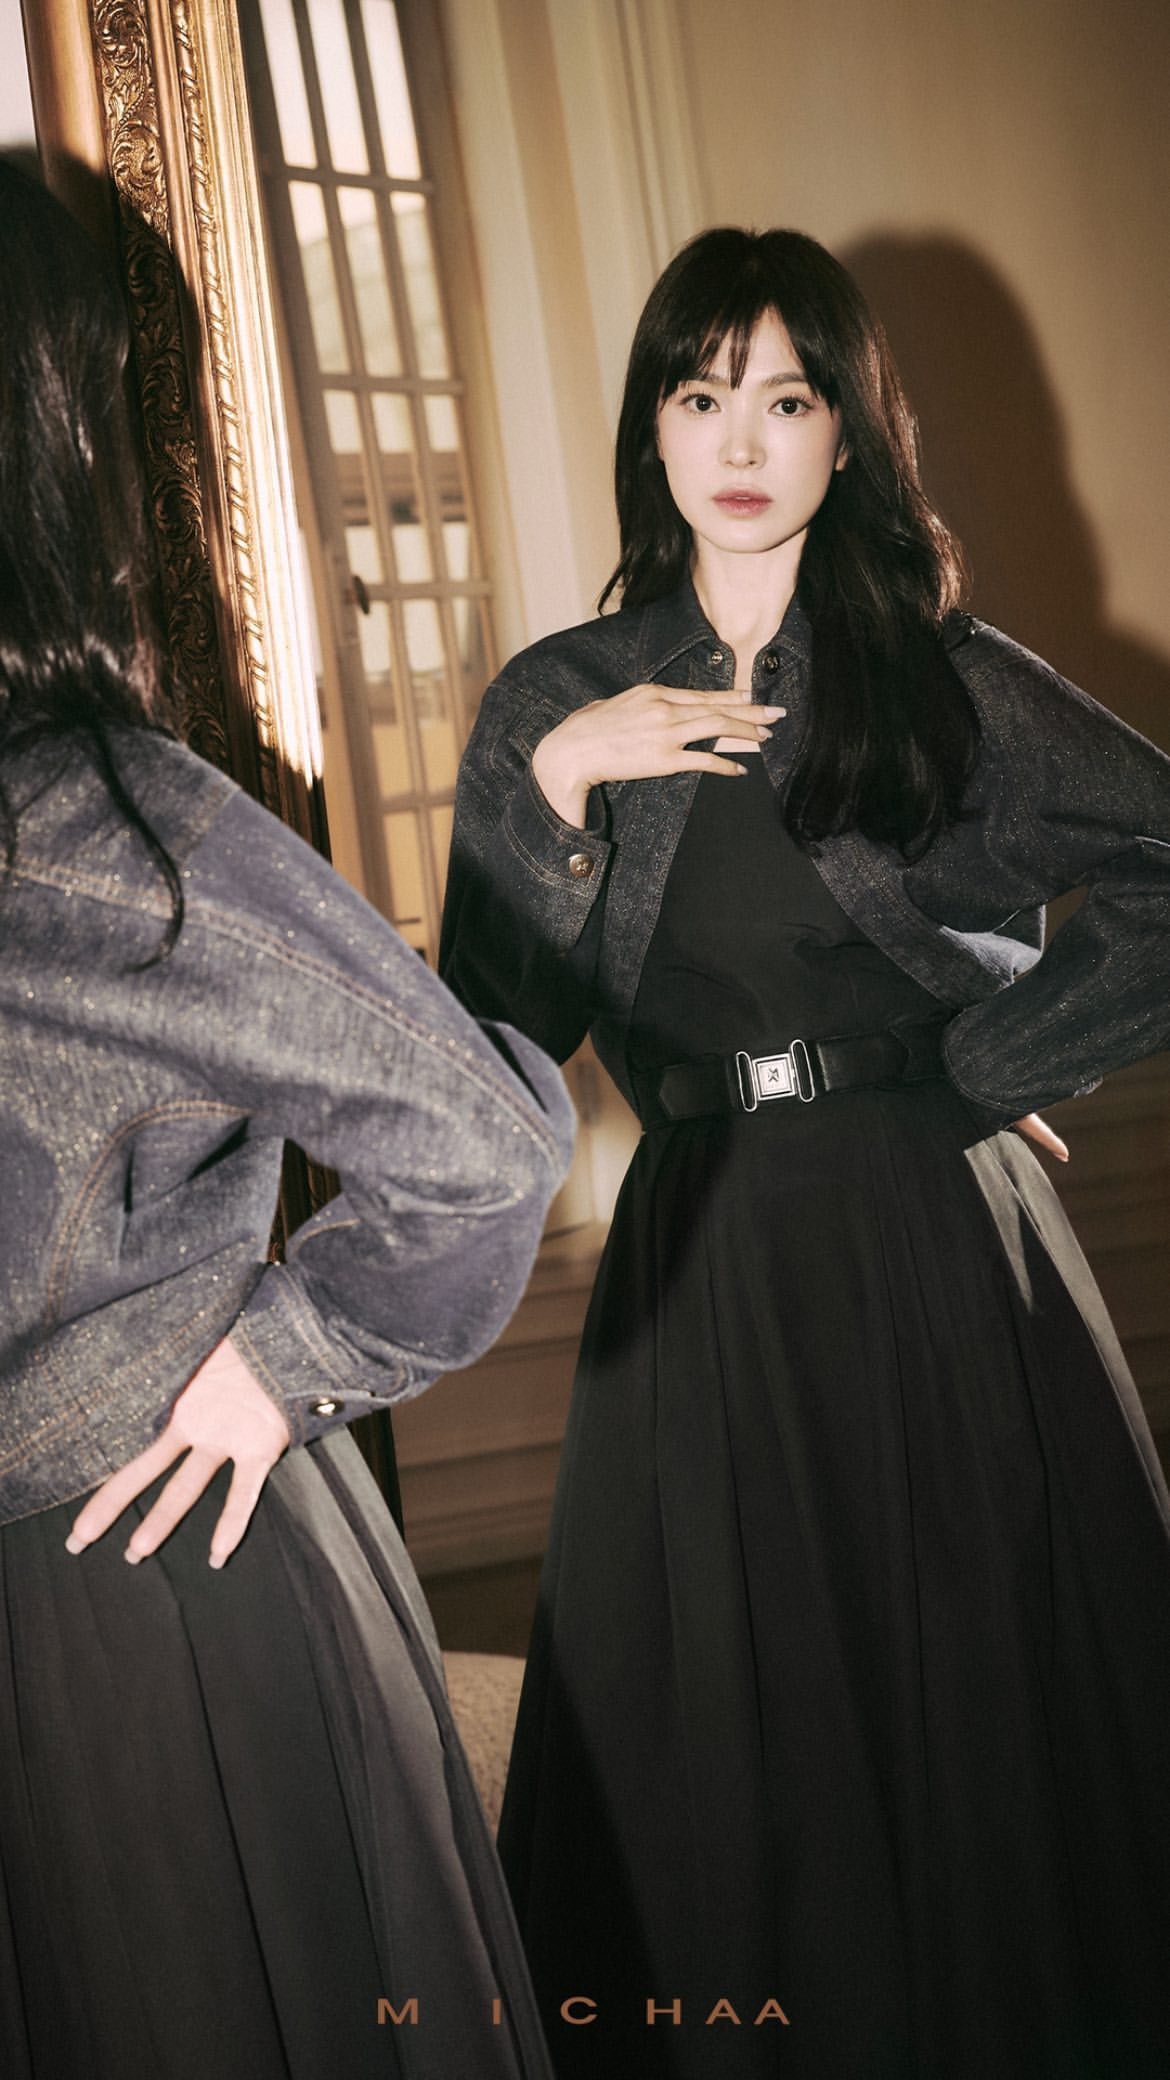 Song Hye Kyo dội bom loạt ảnh tạp chí mới đáp lại ồn ào lão hoá: Nhan sắc xứng tầm định nghĩa cho cụm sốc visual! - Ảnh 9.